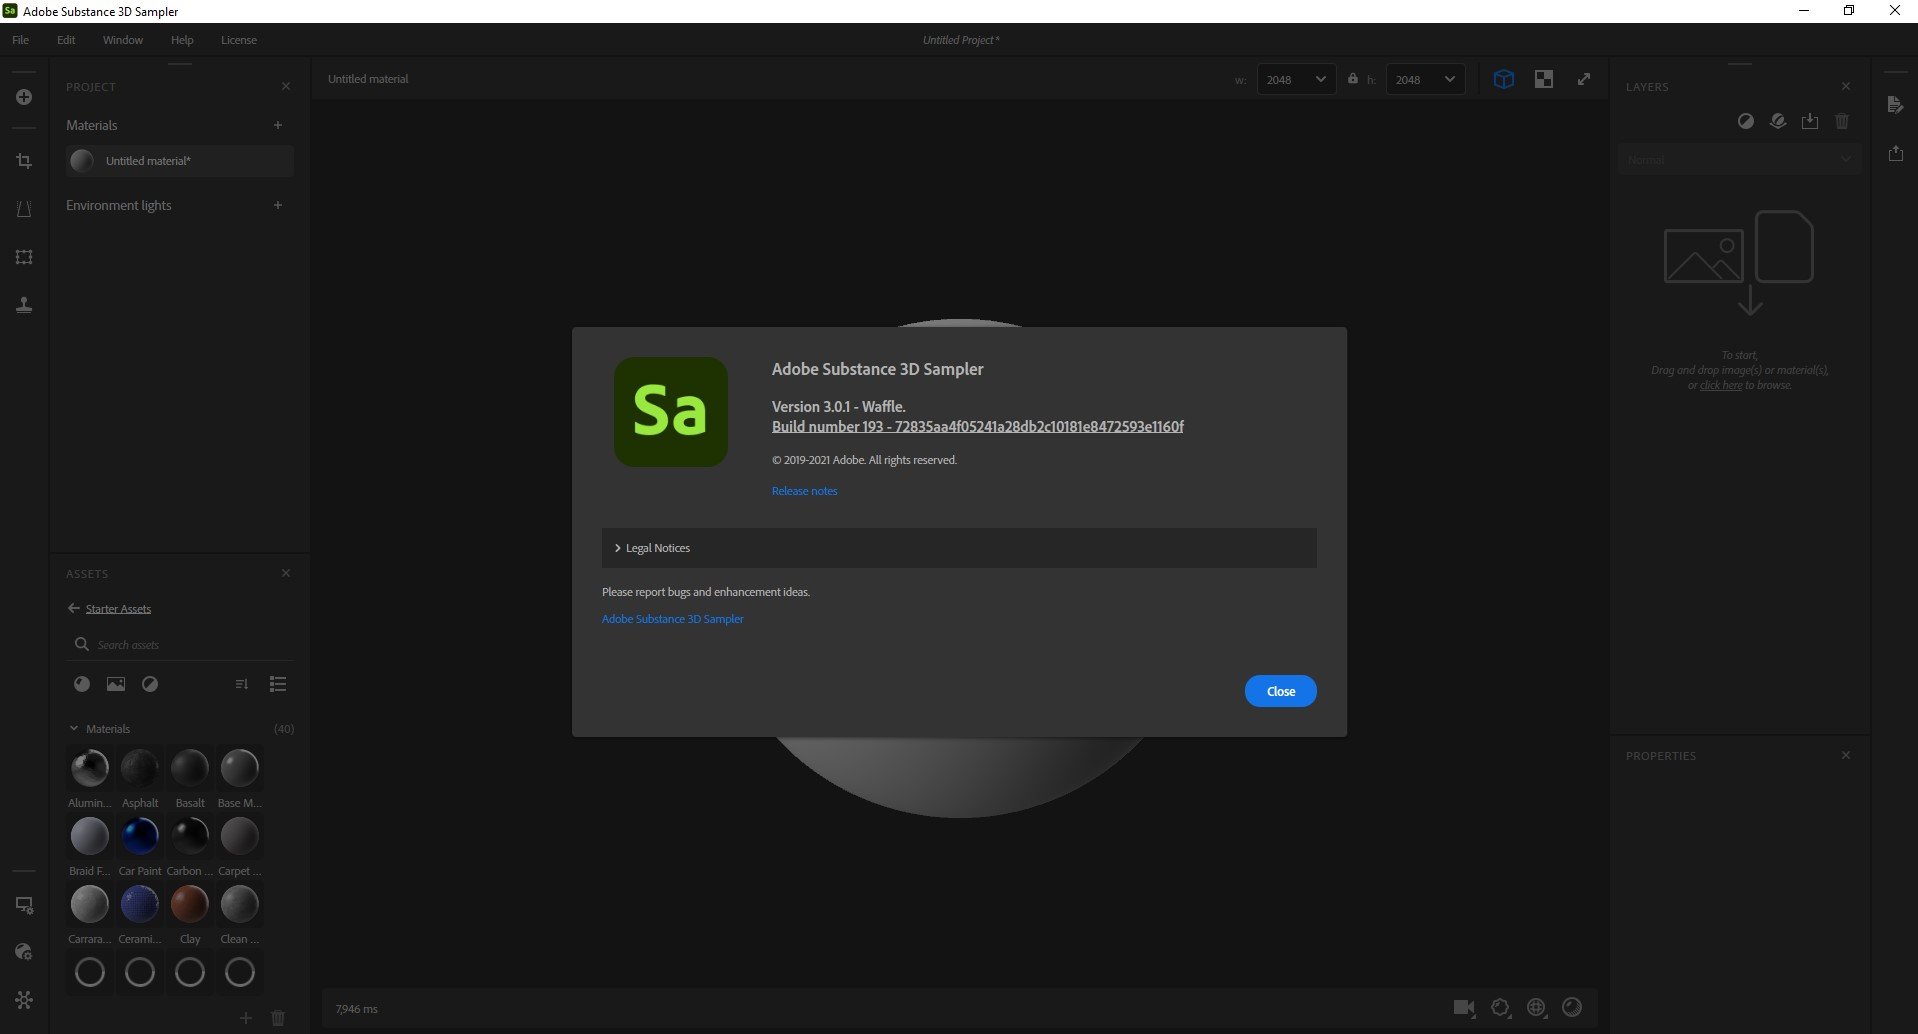 Adobe Substance 3D Sampler 4.2.1.3527 for windows instal free